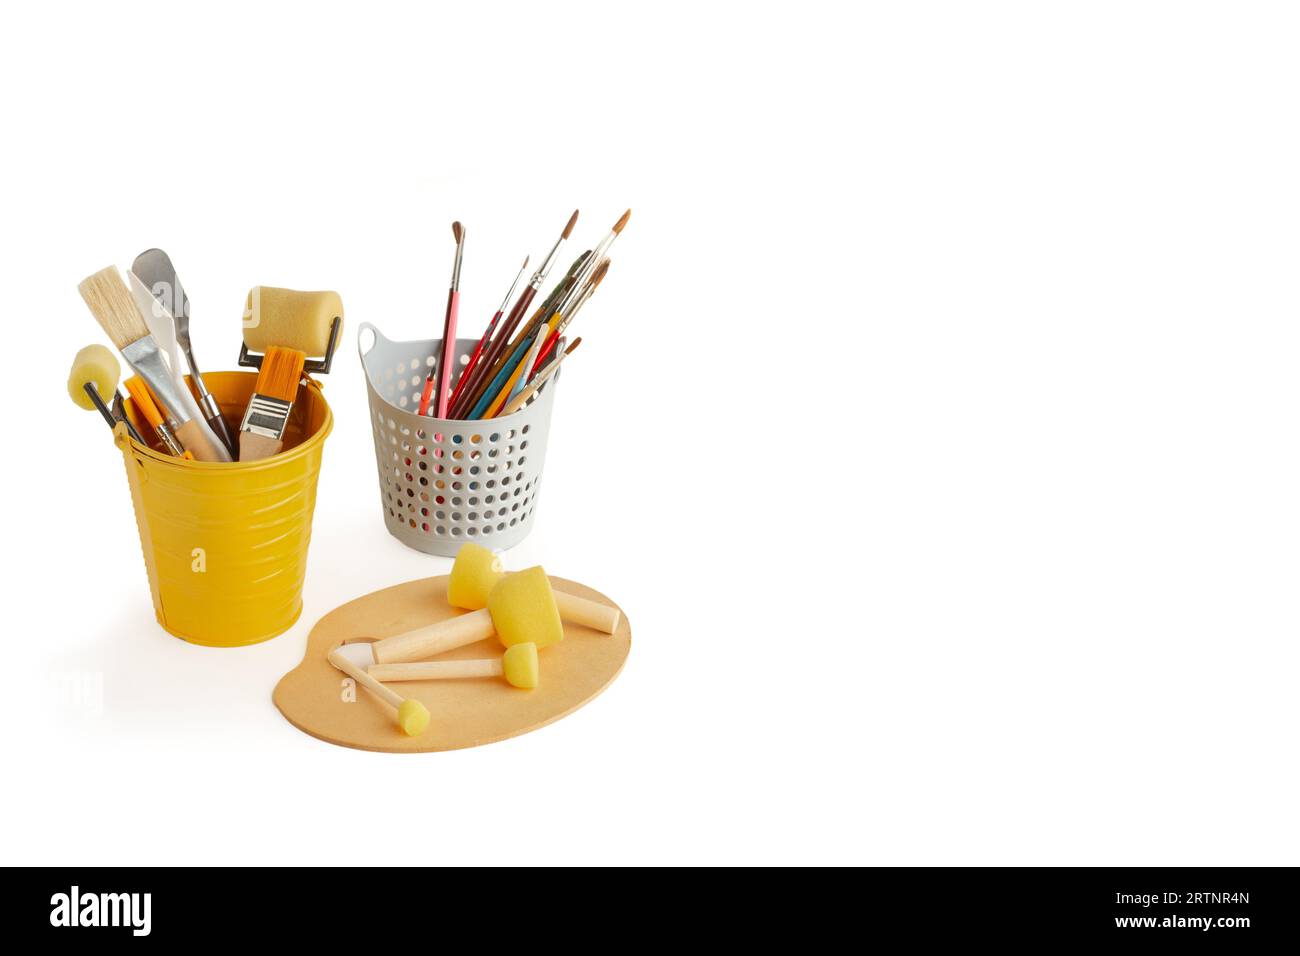 Pinceaux, rouleaux et spatules dans des seaux et brosse mousse éponge ronde sur une palette en bois sur fond blanc Banque D'Images